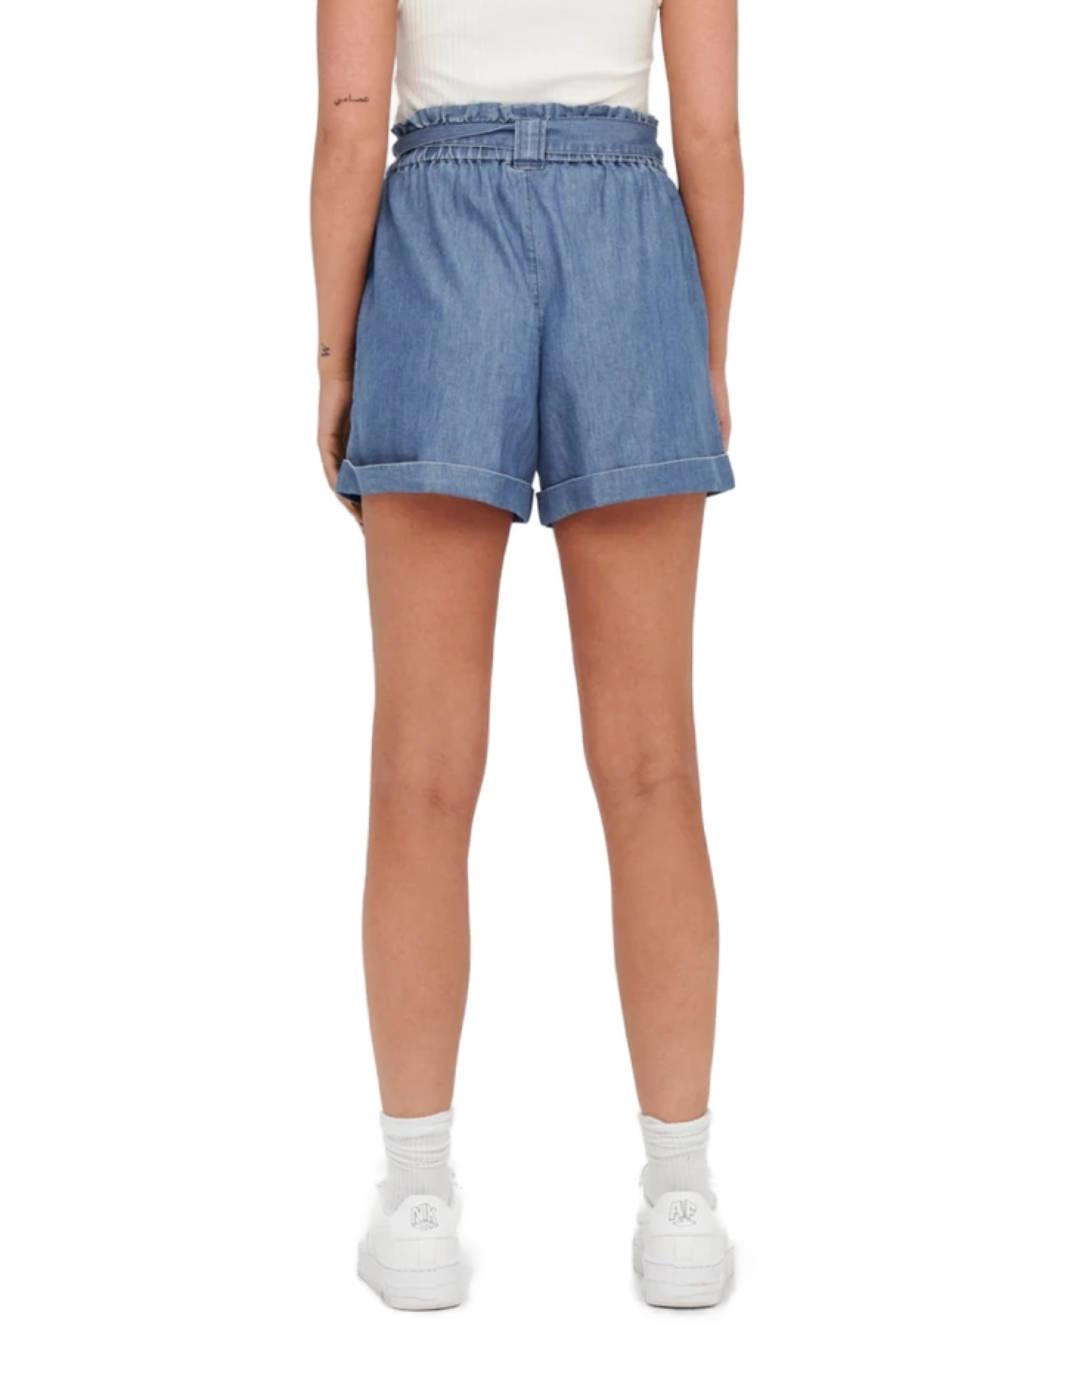 Shorts Only Bea azul jaspeado cintura con goma elastica